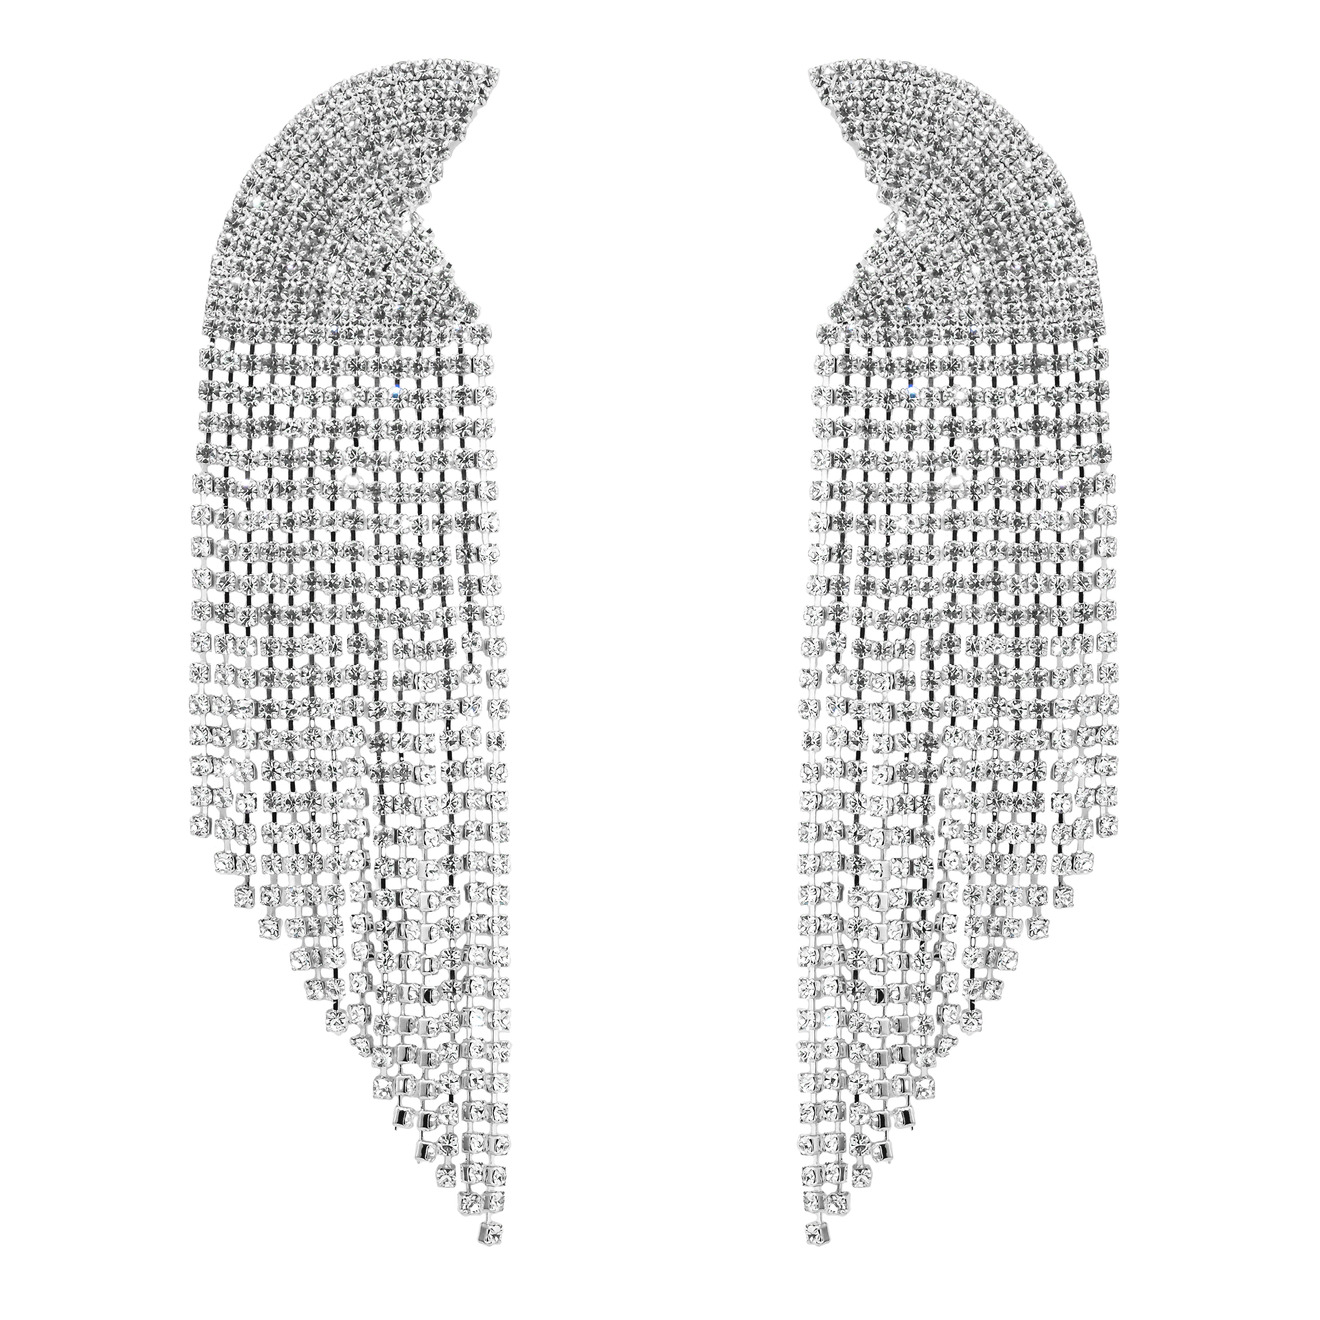 Herald Percy Серебристые серьги-полукруги с кристаллами herald percy серебристые серьги звезды с кристаллами